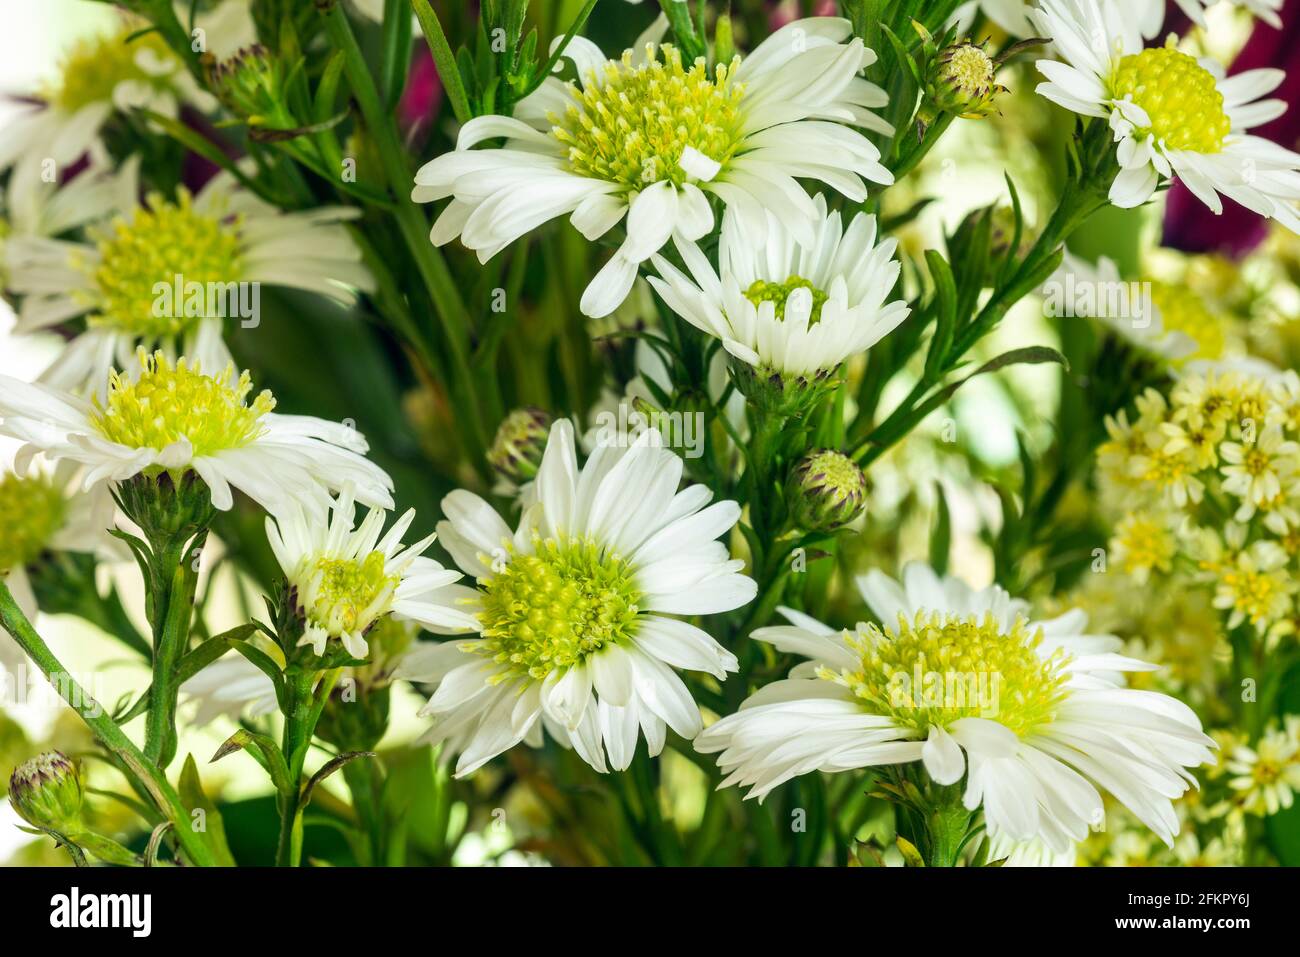 WA19503-00...WASHINGTON - UN broussaillon, comme une Marguerite, avec une fleur au centre jaune que l'on trouve dans un arrangement commercial de fleurs. Banque D'Images